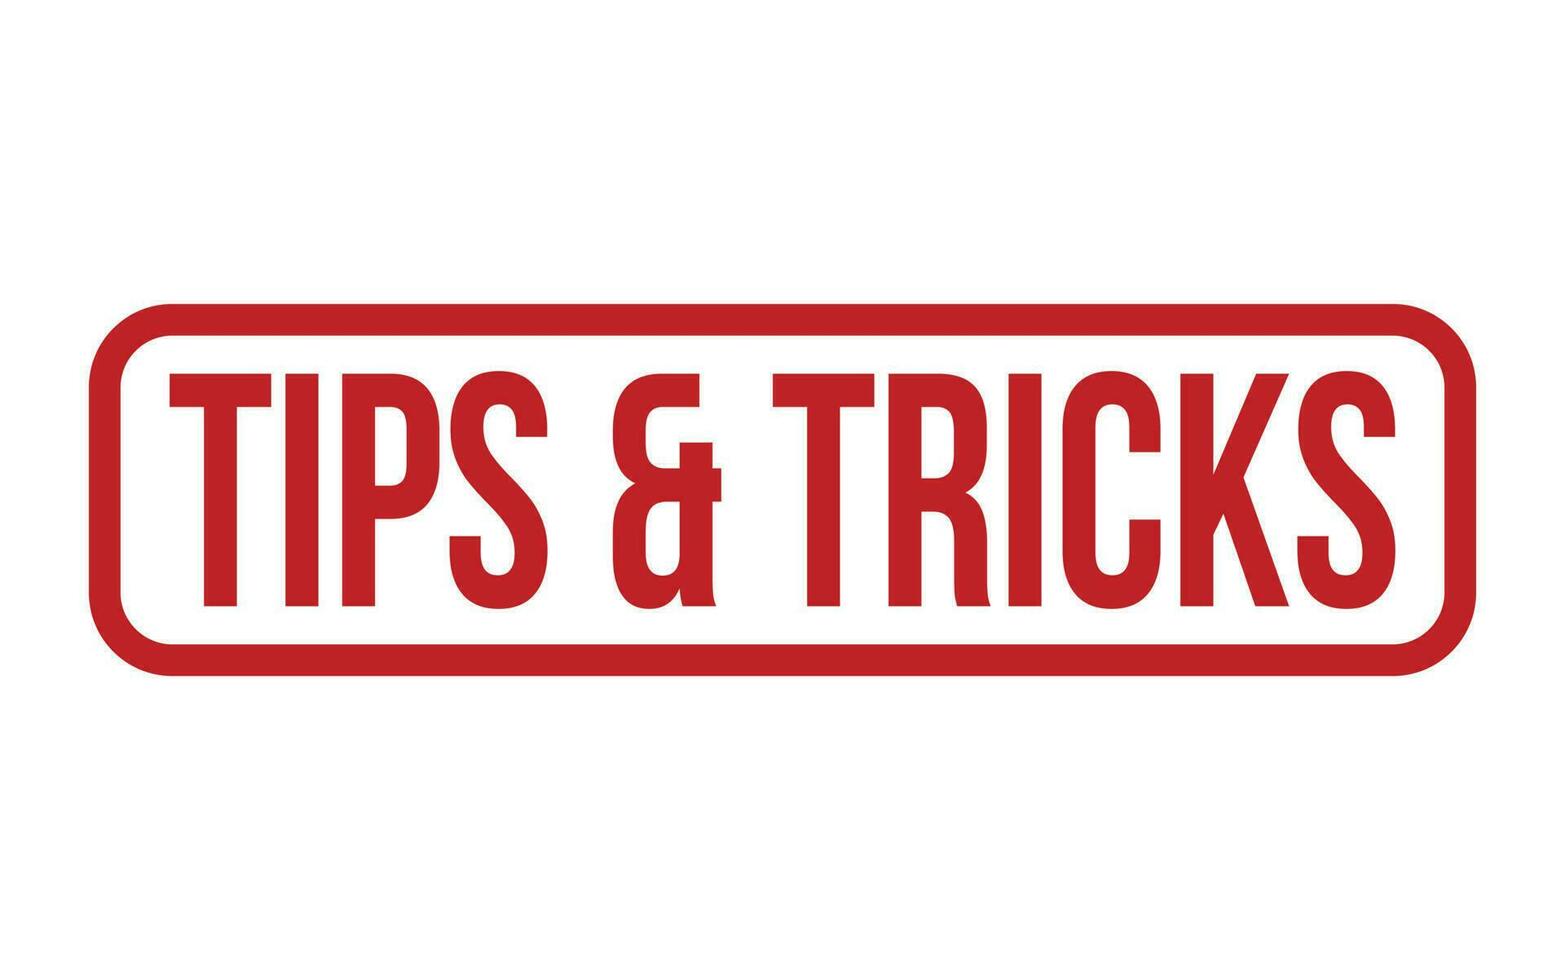 Tipps und Tricks Gummi Briefmarke Siegel Vektor